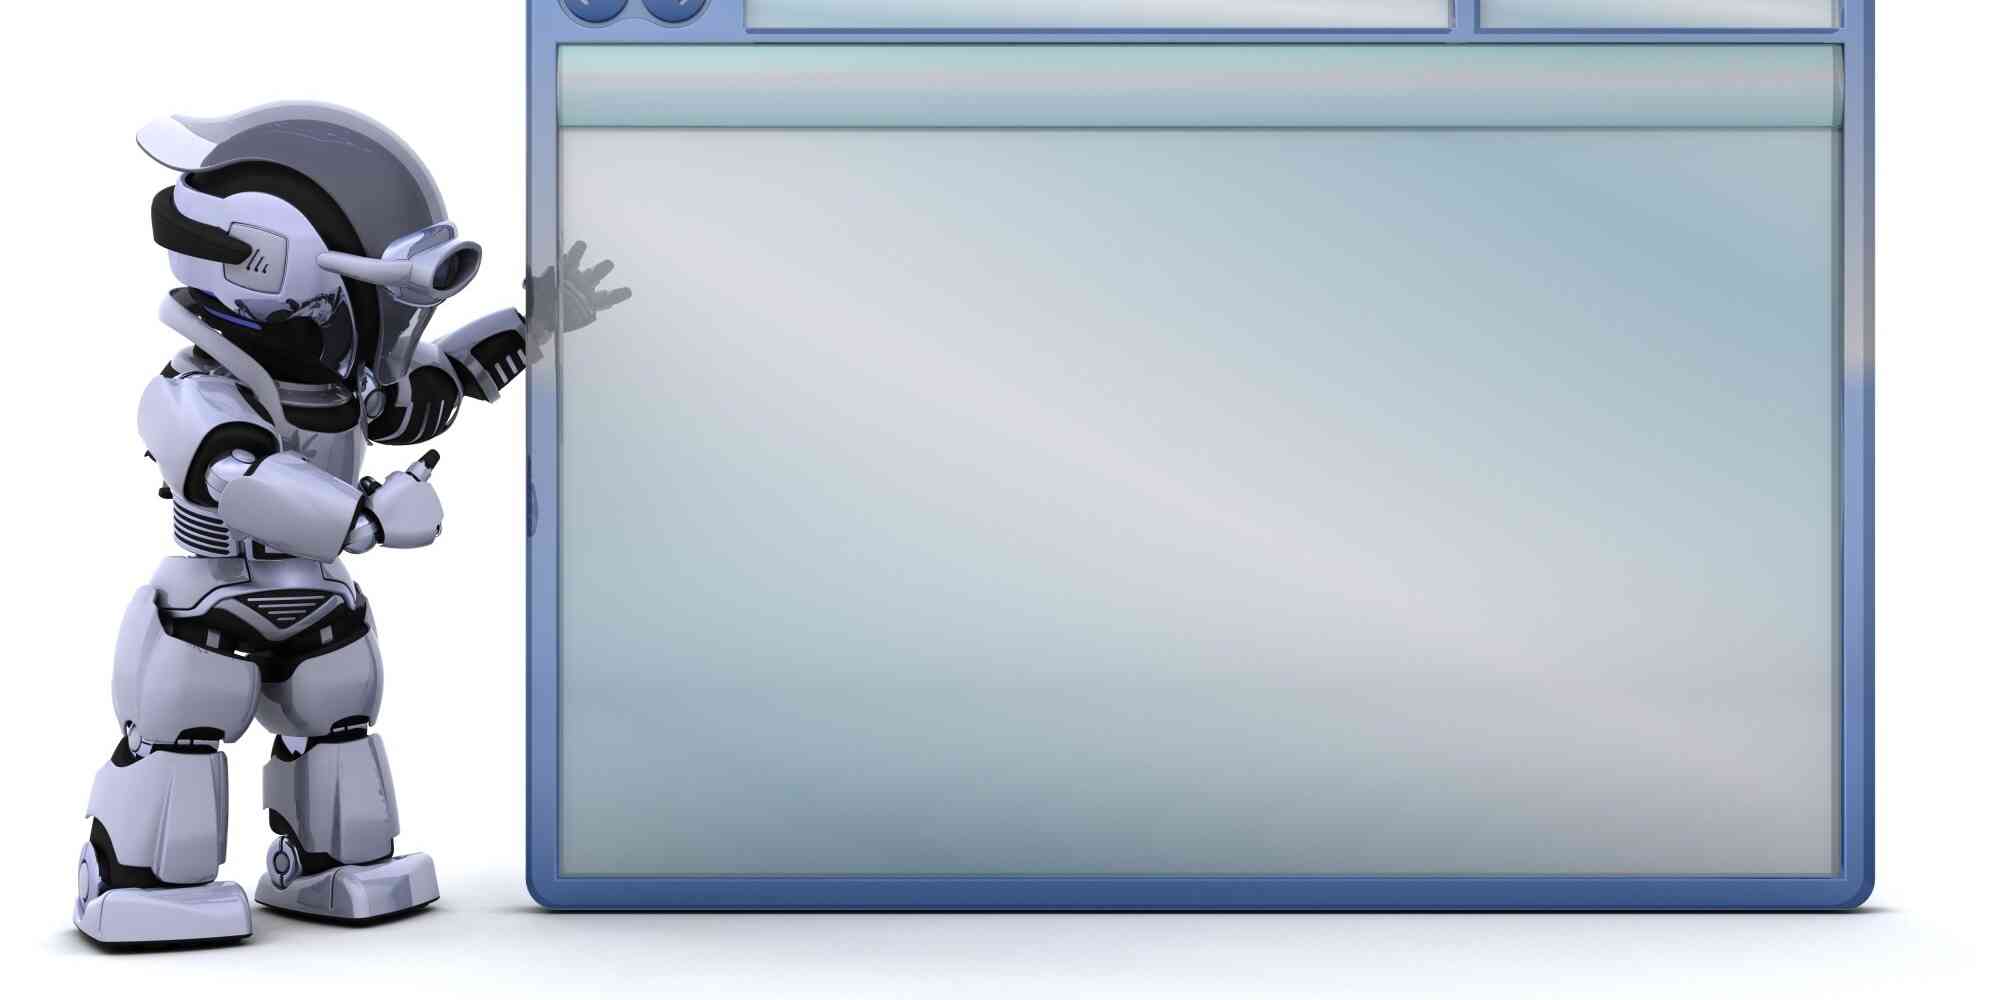 一个机器人站在一个大空白屏幕旁边，这个屏幕可以看作是互联网的象征。